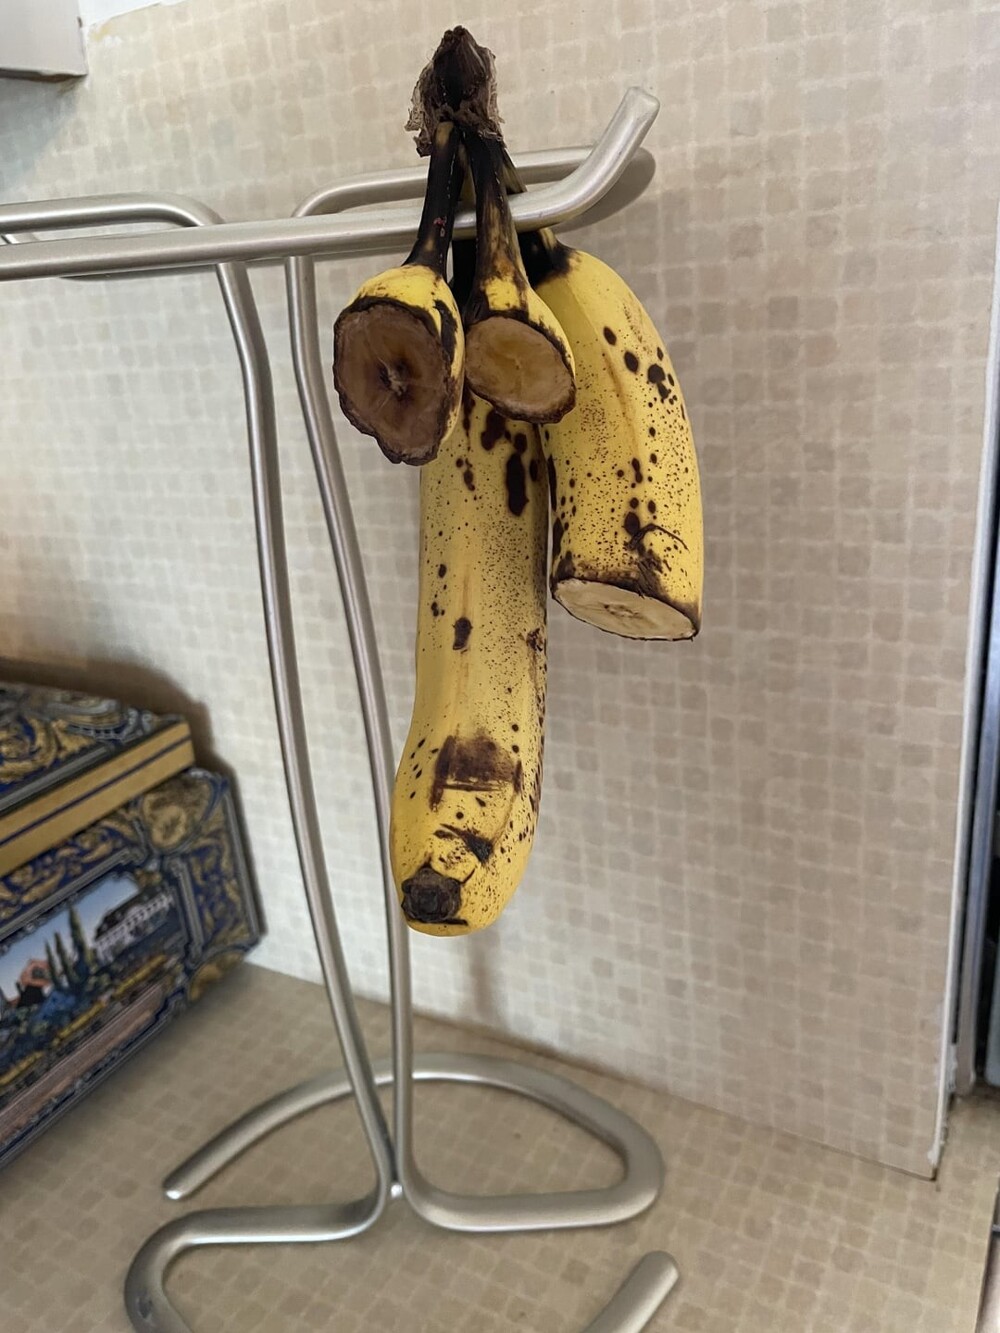 28. "Моя жена просто срезает бананы"